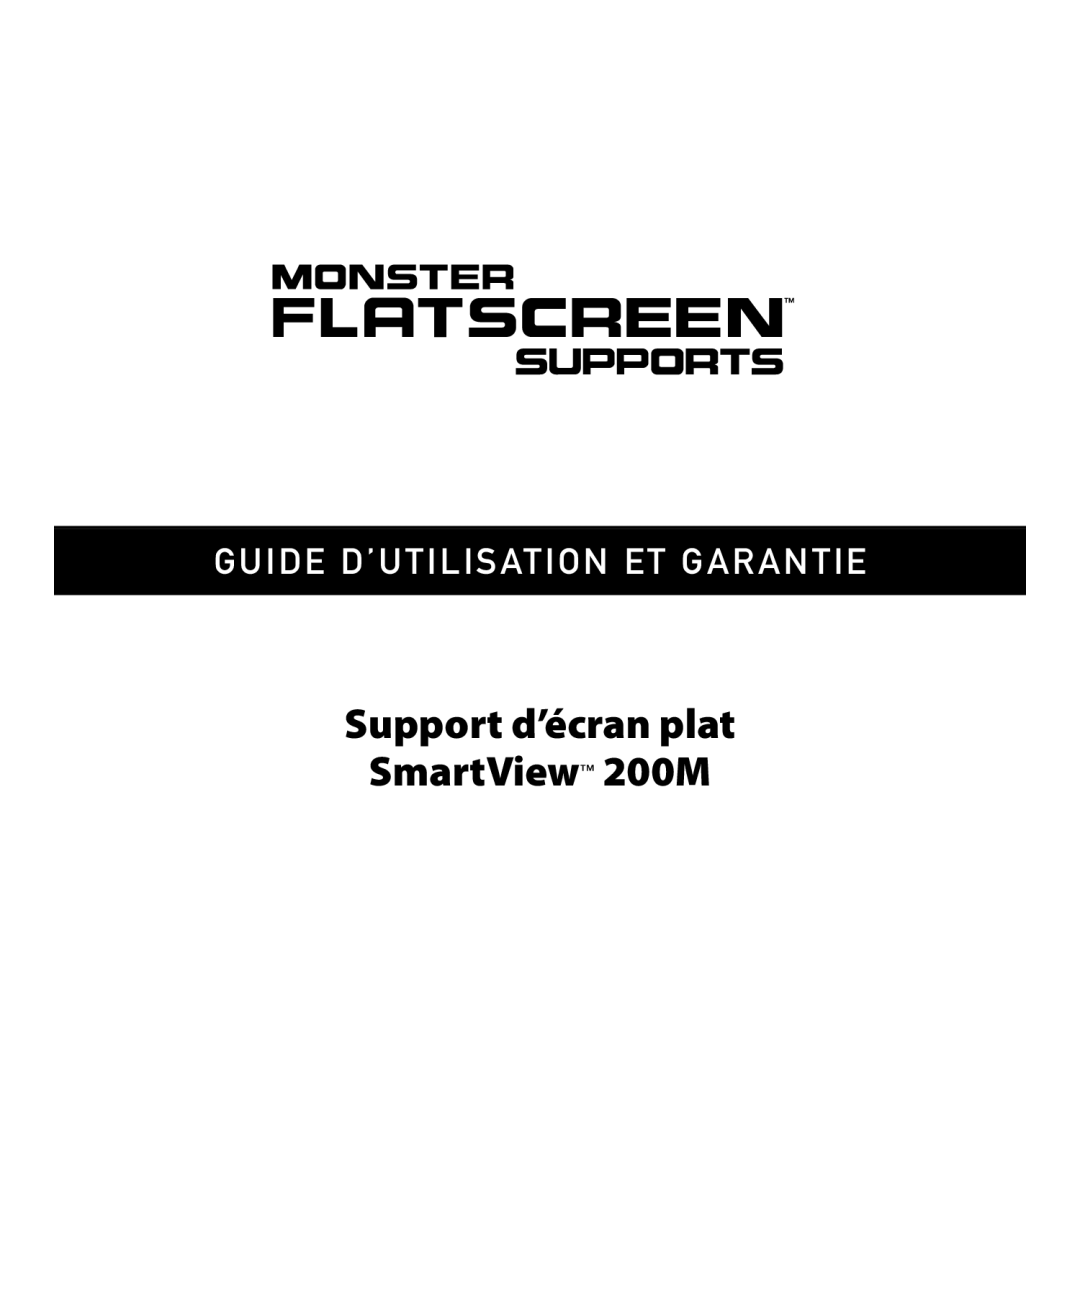 Monster Cable warranty Support d’écran plat SmartView 200M, Guide D’Utilisation Et Garantie 